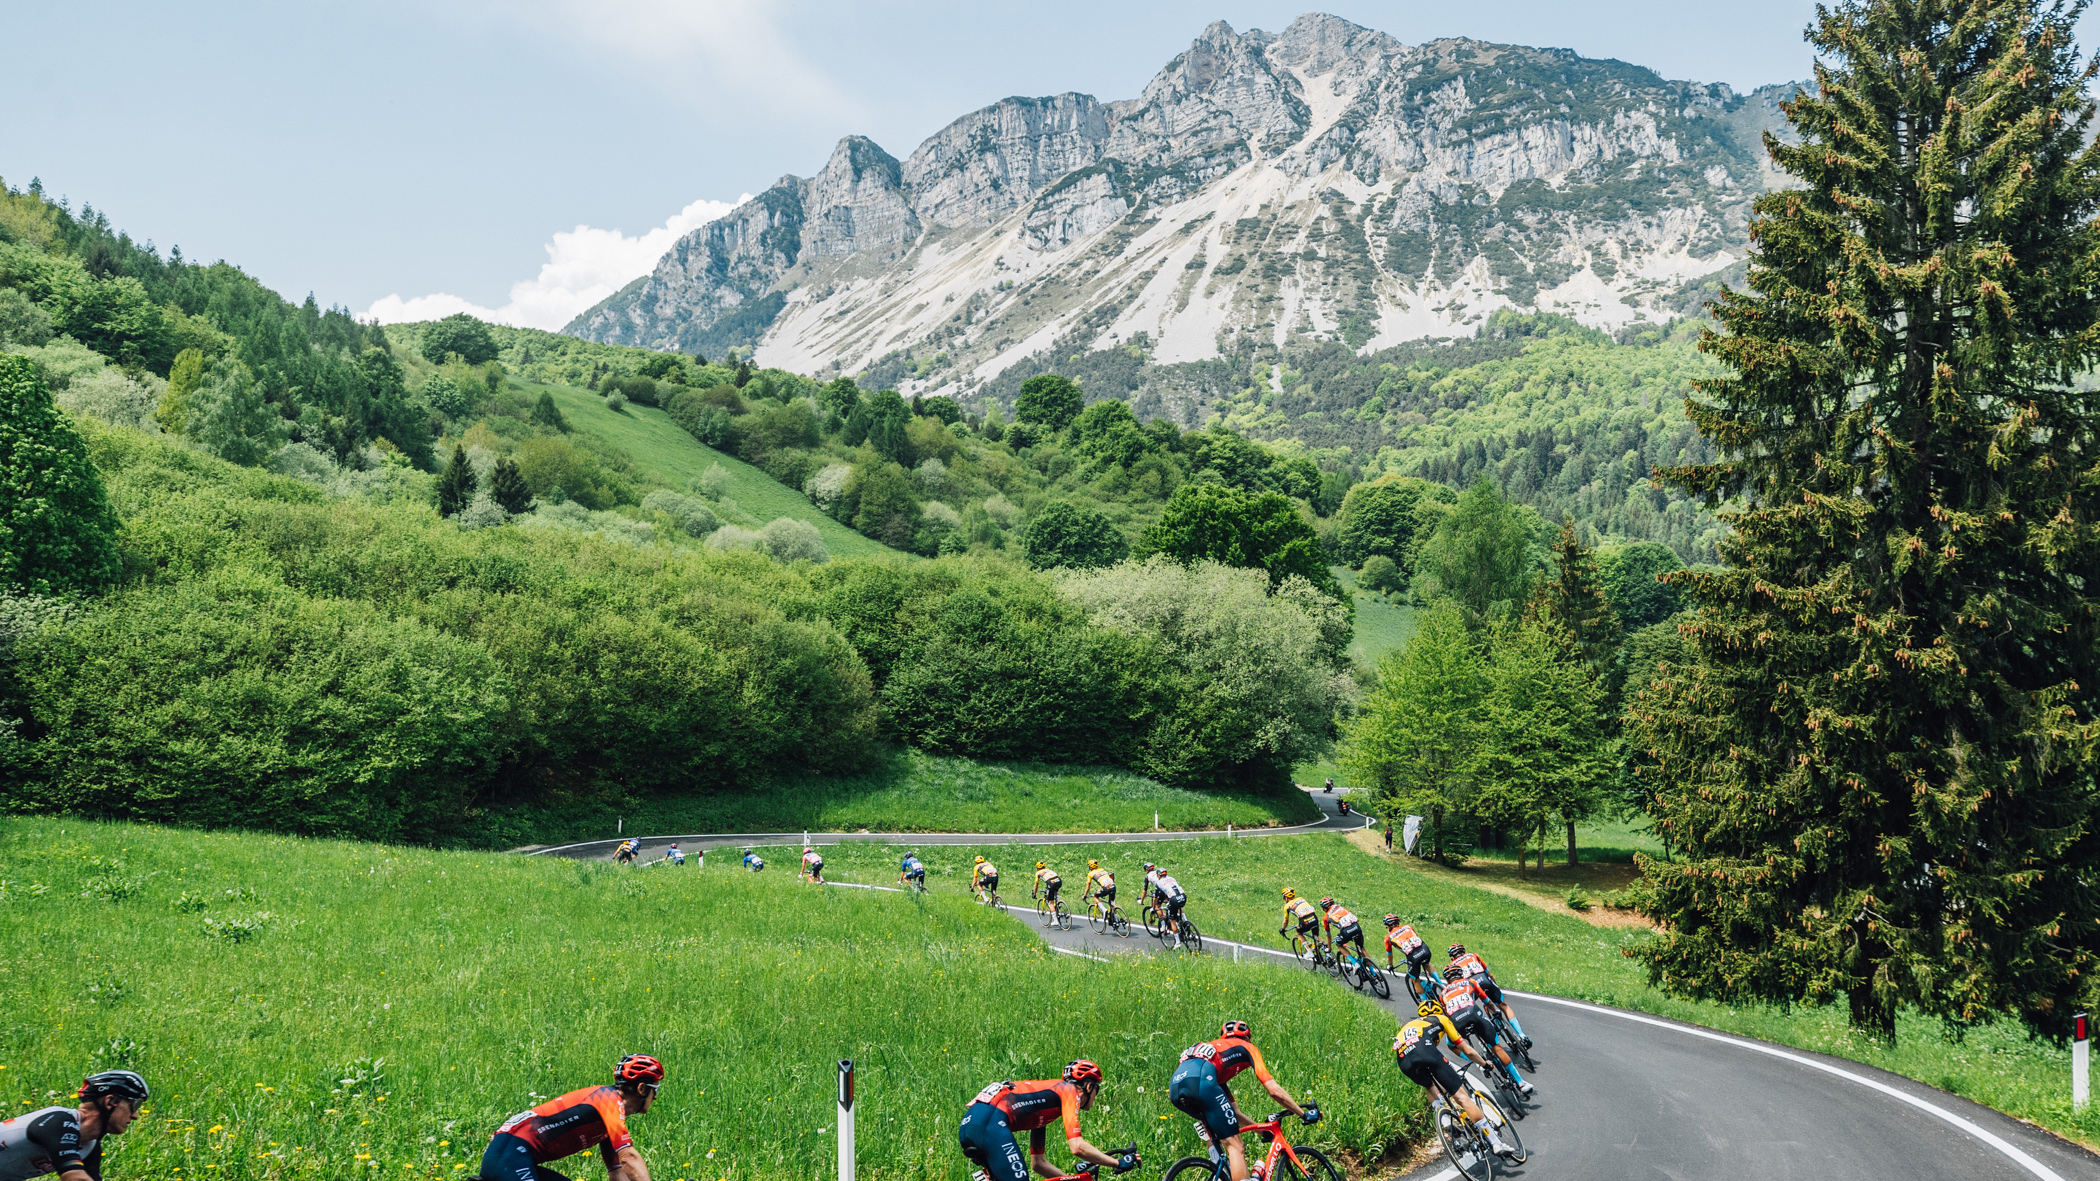 The mountainous terrain of stage 16 of the Giro d'Italia